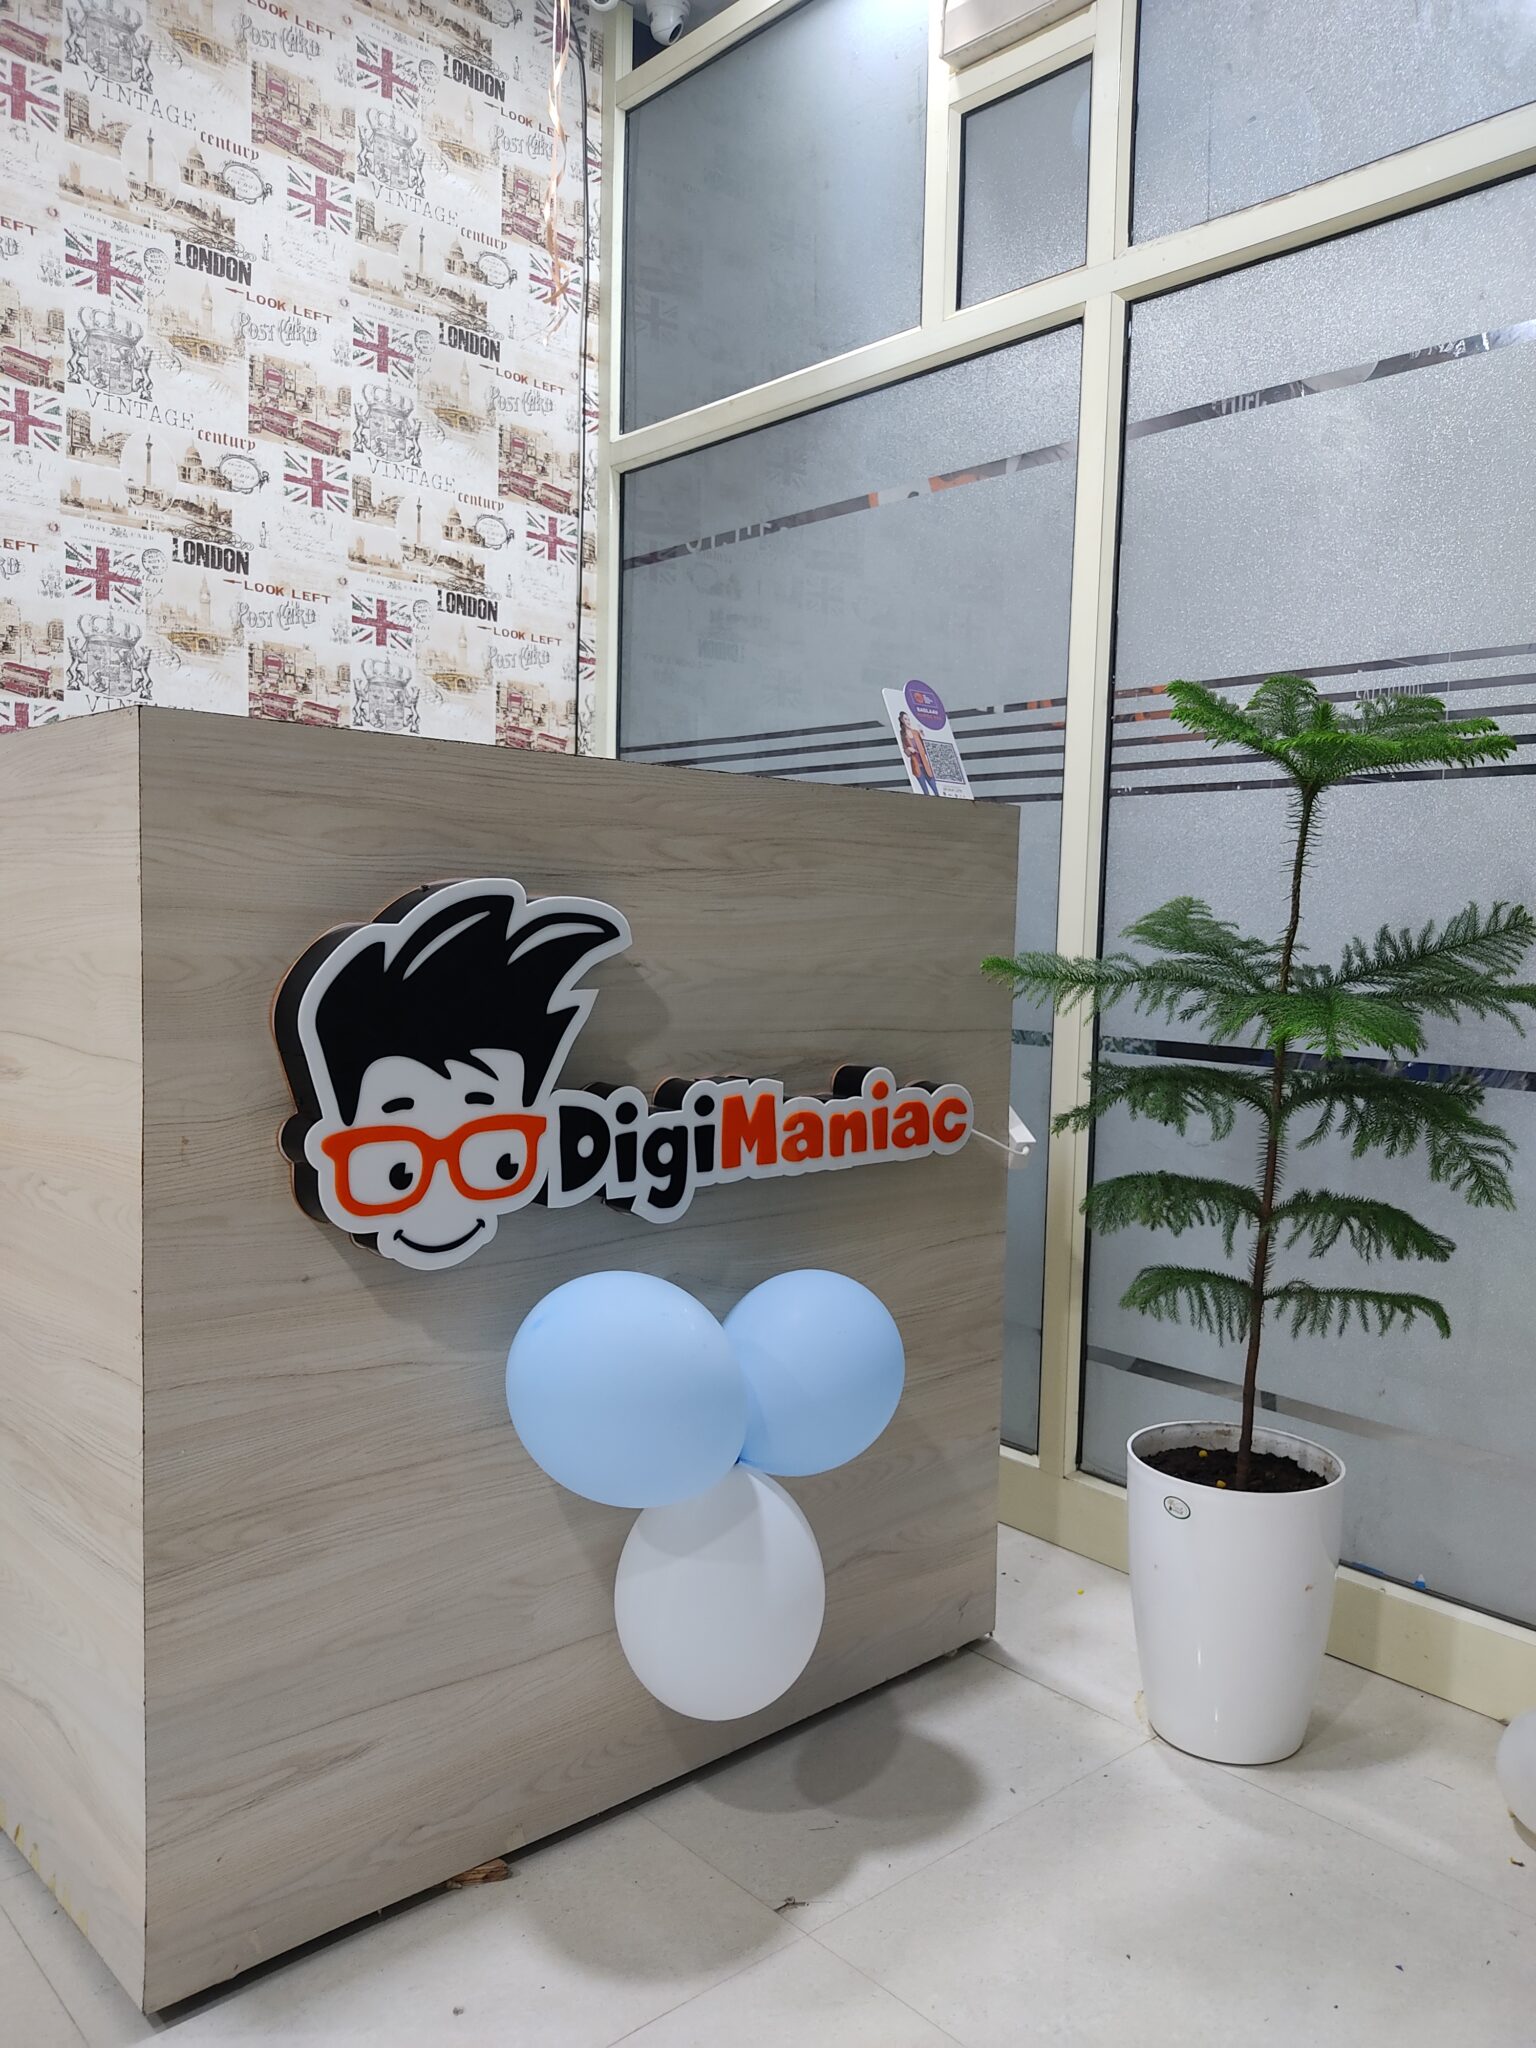 Digital Marketing and Web Development Institute in Kurukshetra